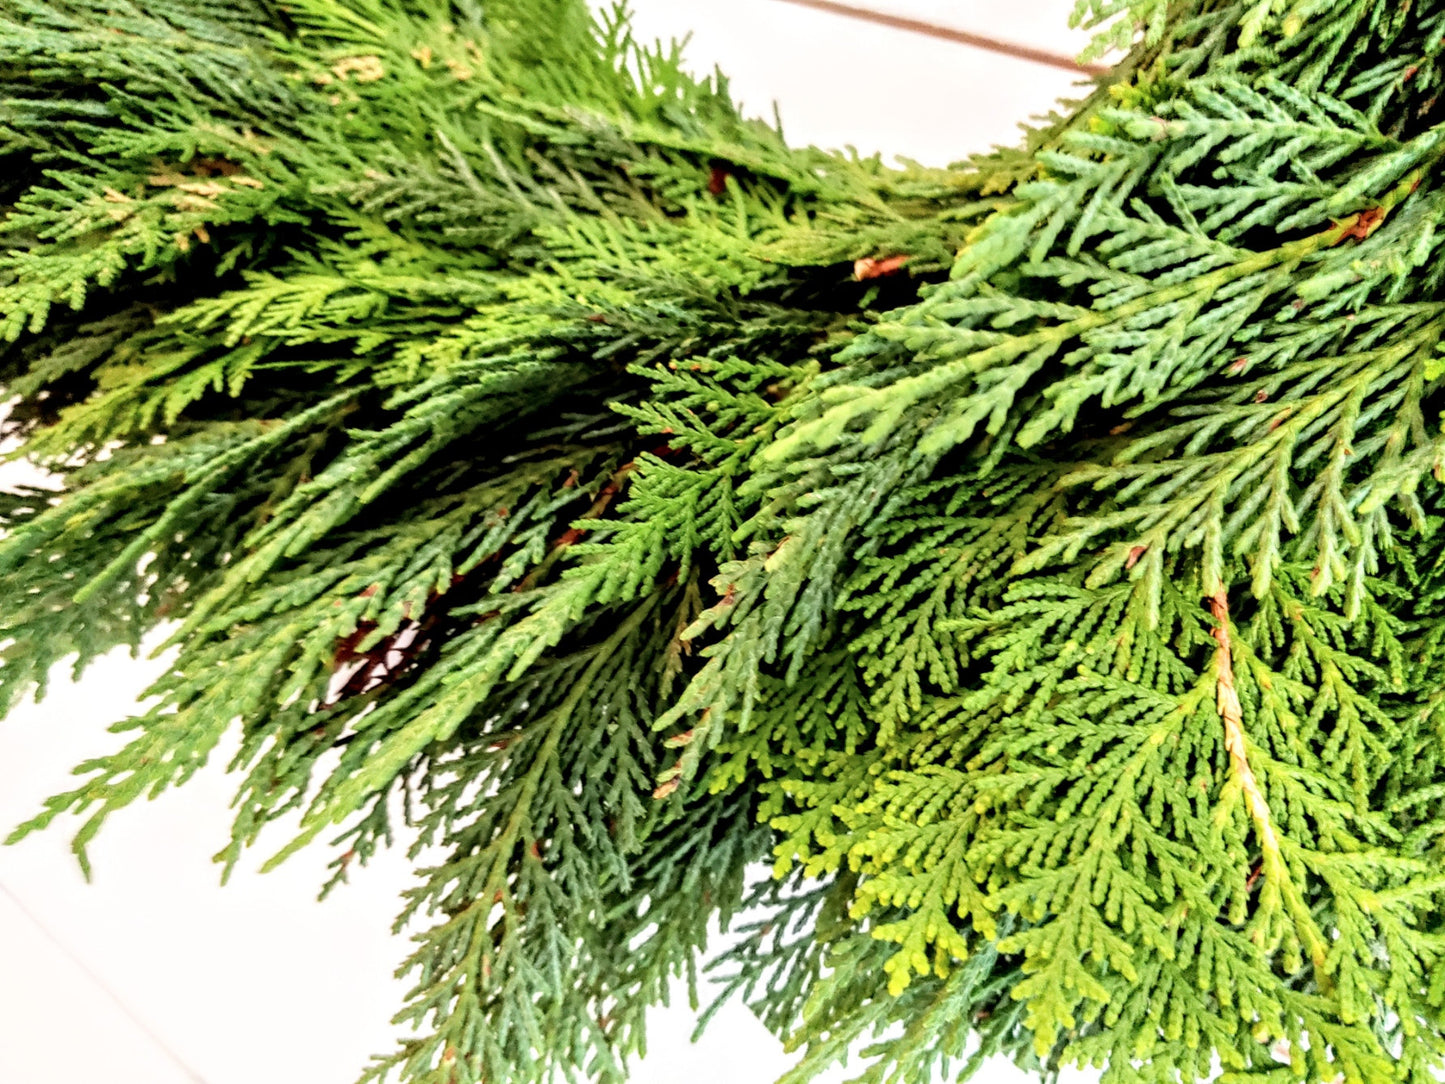 Fresh Christmas Wreath Cedar Cypress And Red Burlap Buffalo Bow, Live Christmas Wreath, Live Evergreen Christmas Wreath